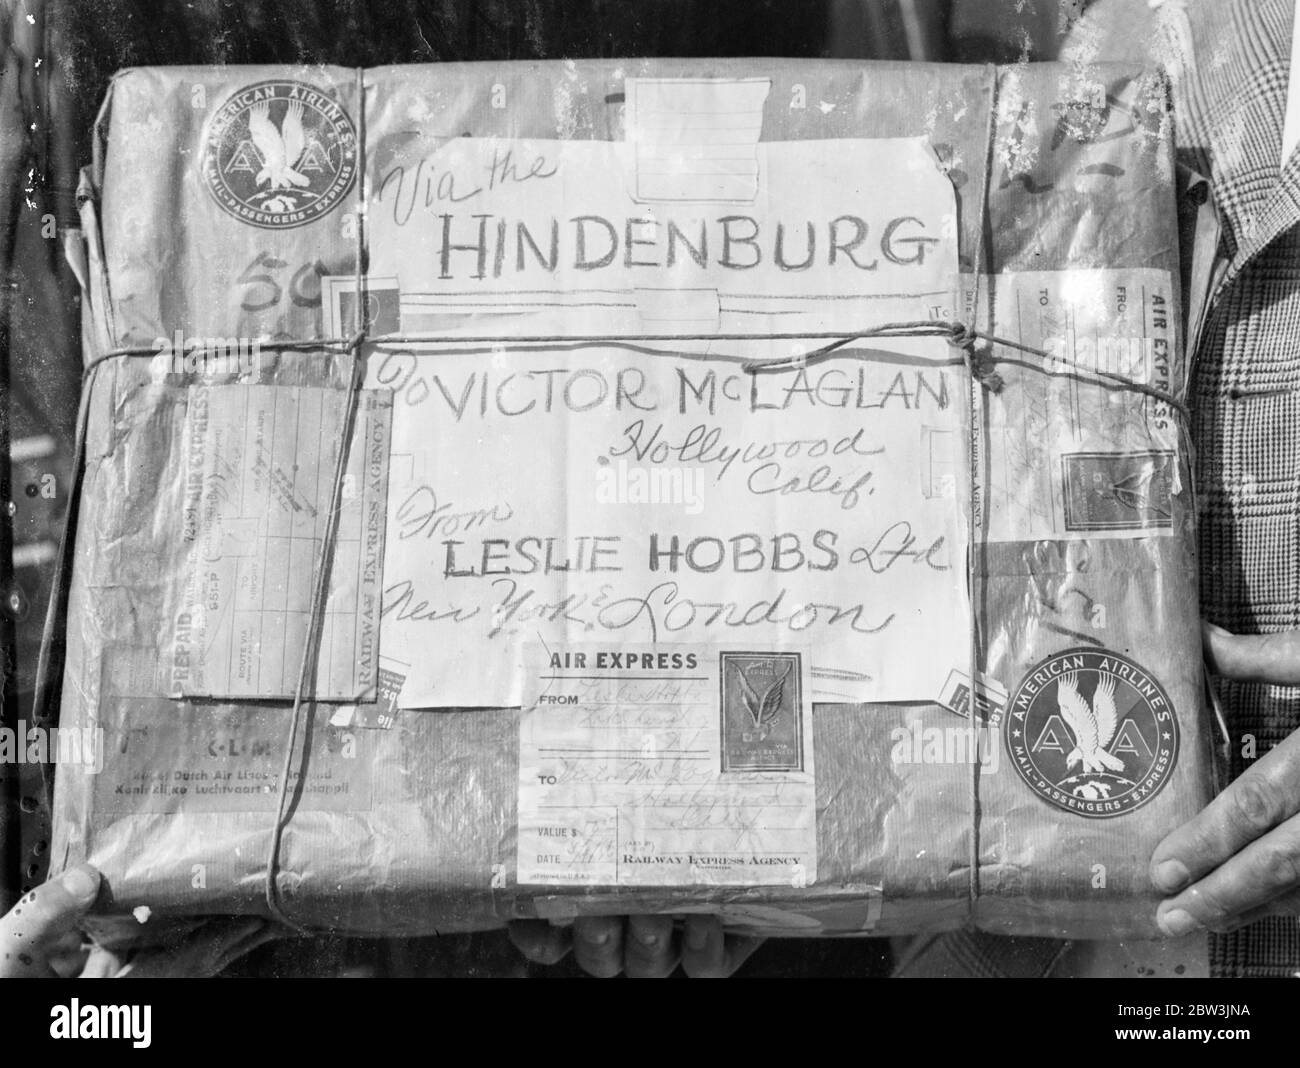 Die am meisten bereiste Jacke der Welt! . Hergestellt für Victor McLaglen in London, nahm Luftschiff Hindenburg es über den Atlantik. Innerhalb von vier Tagen nach dem letzten Stich in einen in London maßgeschneiderten Sportmantel gelegt, trug Victor McLaglen, der Filmschauspieler, den Mantel in Los Angeles. Der Mantel wurde von London nach Friedrichshafen, Deutschland, von Flugzeugen geflogen und dann auf dem Luftschiff Hindenburg nach Lakehurst, New Jersey, gebracht. Von dort wurde es von American Airlines nach Los Angeles geflogen. Foto zeigt, das Paket mit dem Mantel bei der Ankunft bei seiner Ankunft. 25 Mai 1936 Stockfoto